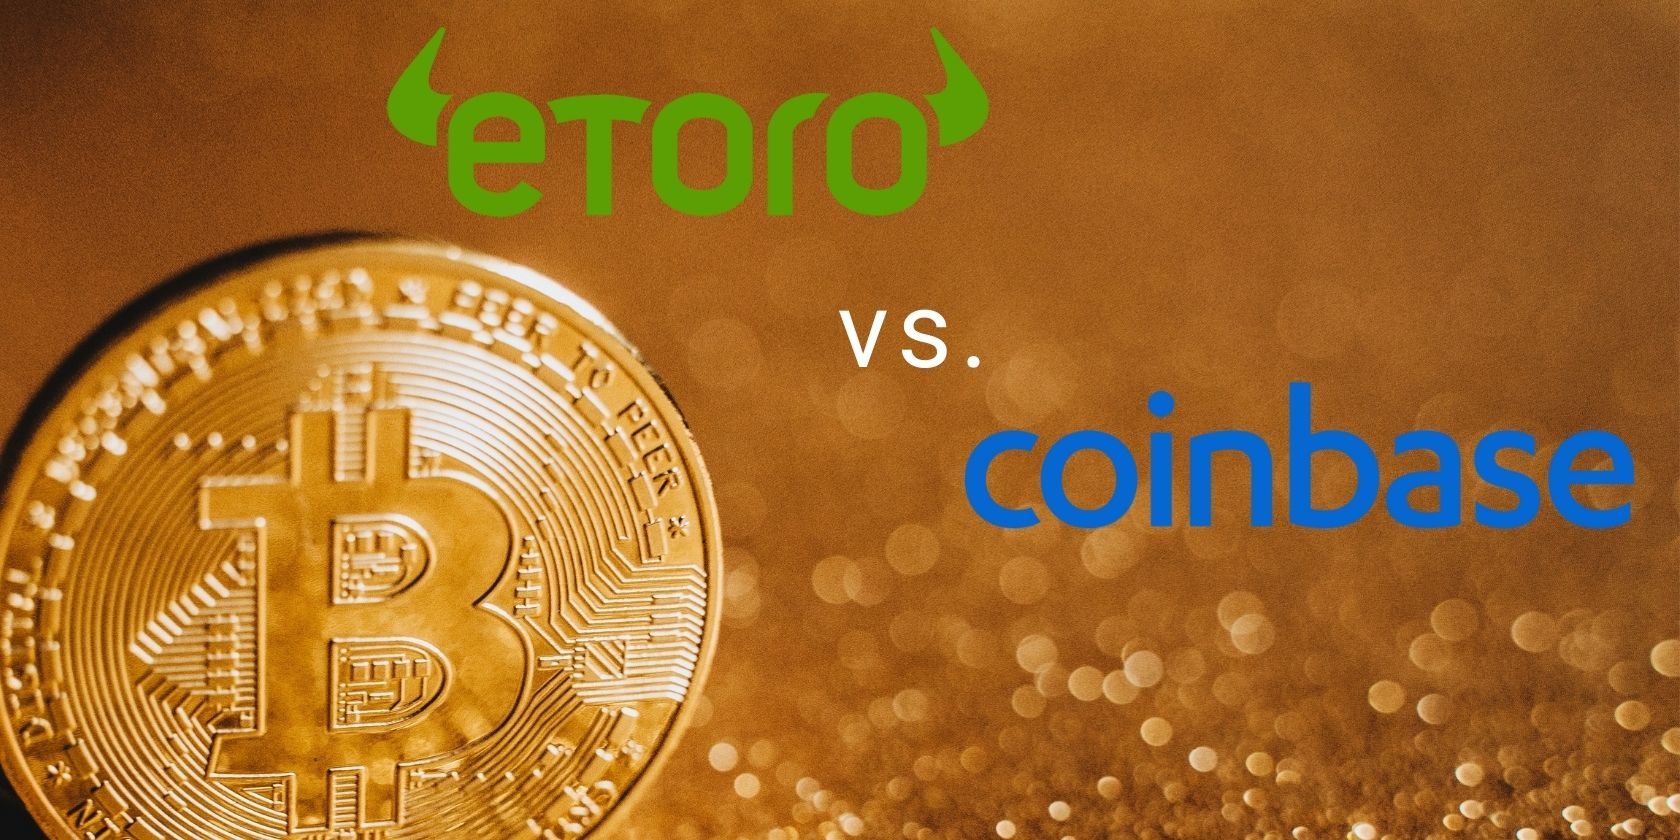 coinbase and etoro logos next to gold bitcoin